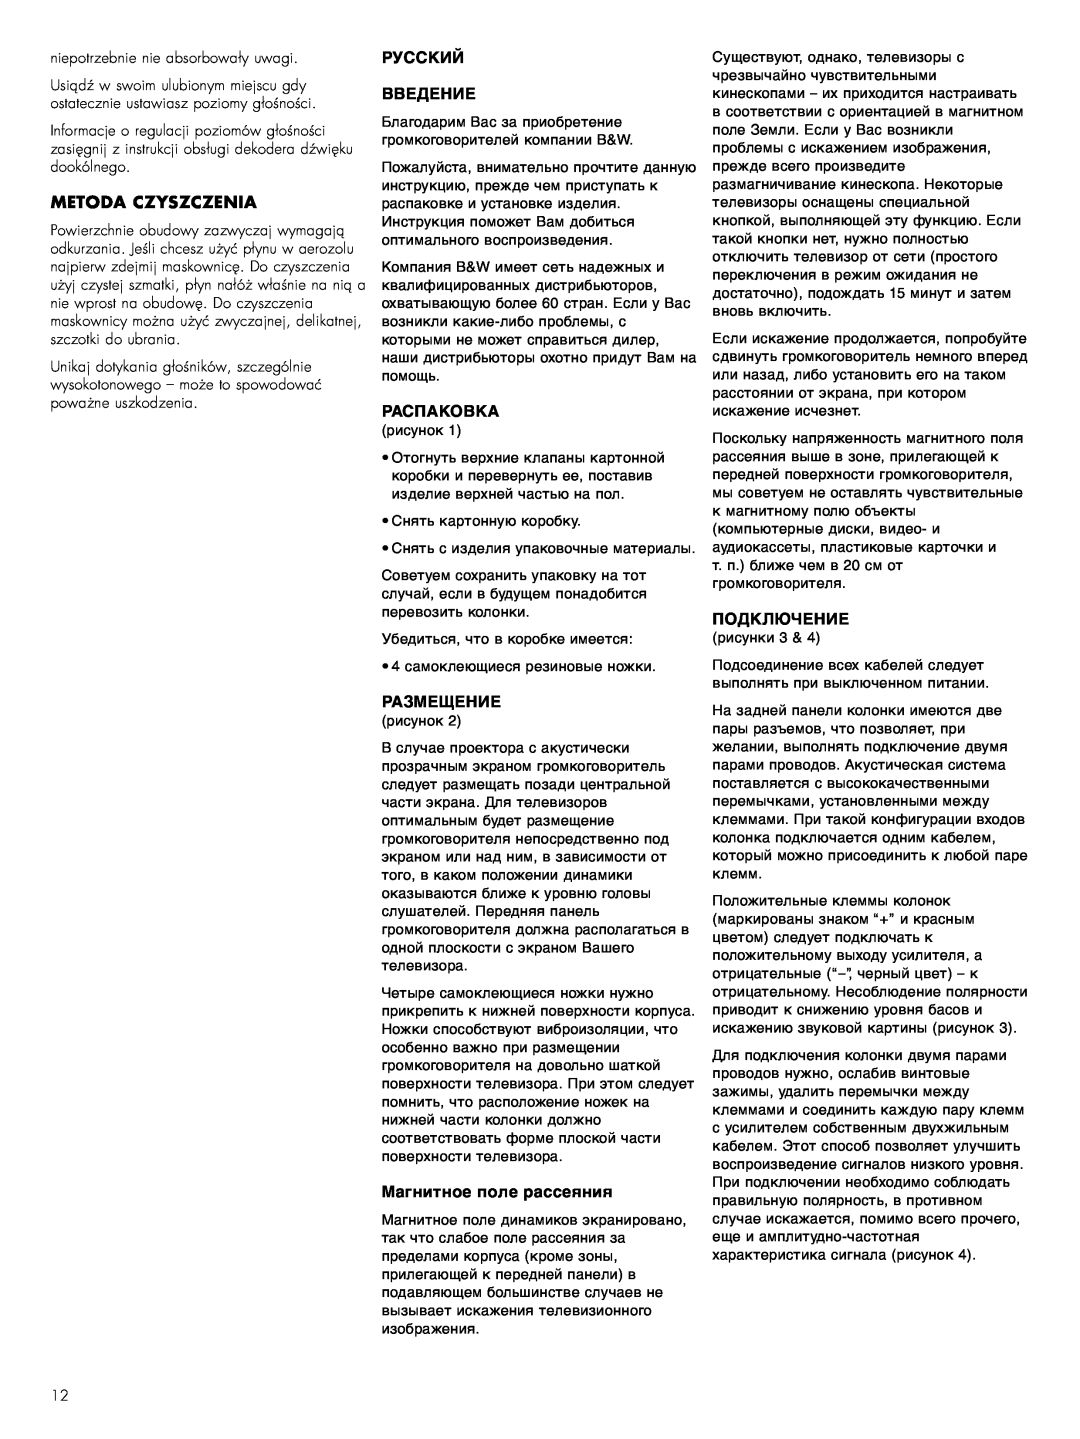 Bowers & Wilkins CC6 S2 owner manual Metoda Czyszczenia, Русский Введение, Распаковка, Размещение, Магнитное поле рассеяния 